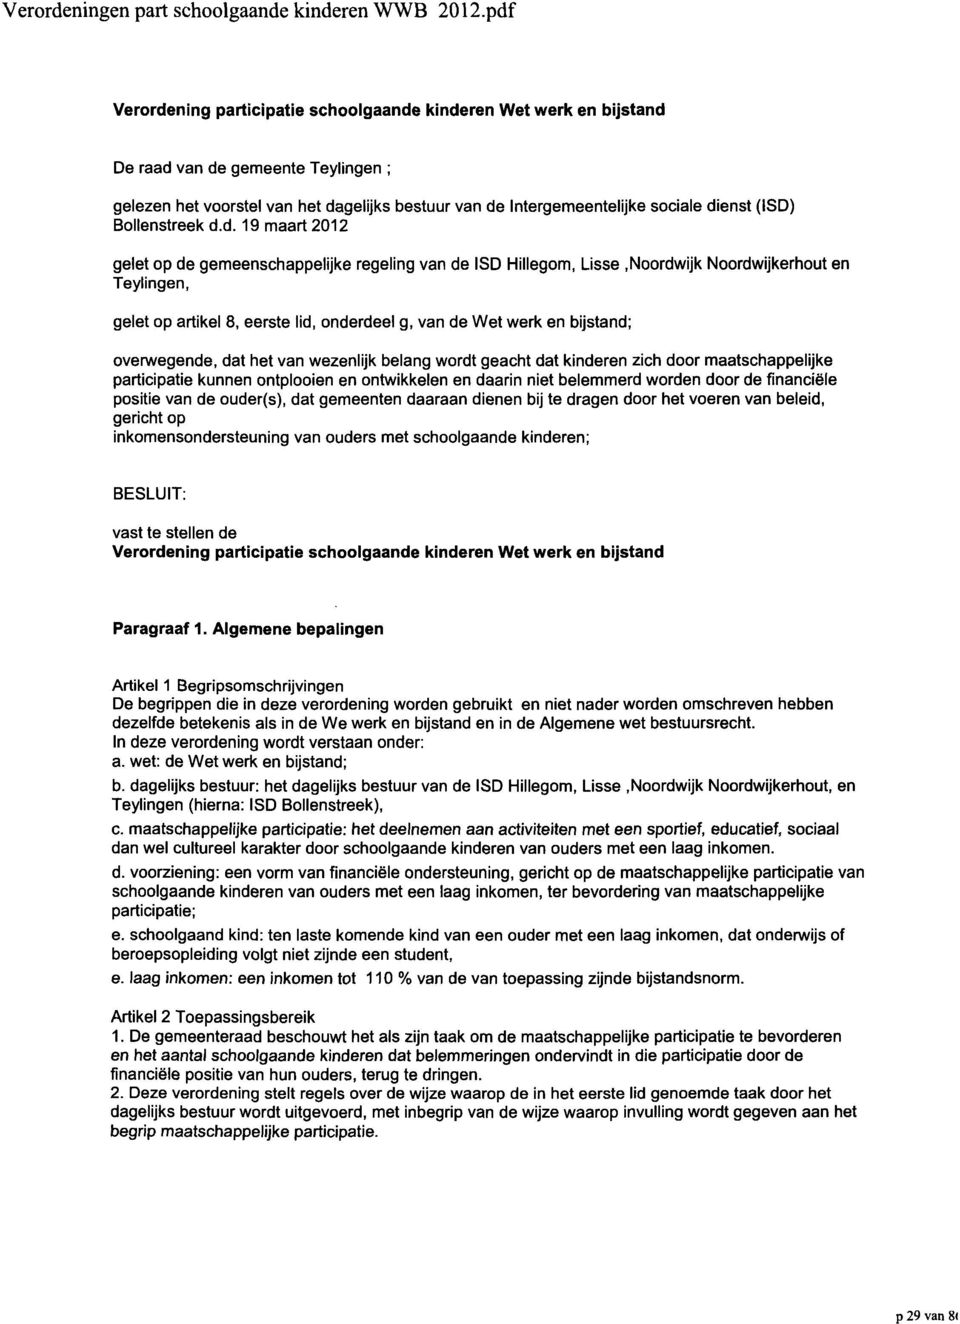 (ISD) Bollenstreek d.d. 19 maart 2012 gelet op de gemeenschappelijke regeling van de ISD Hillegom, Lisse.